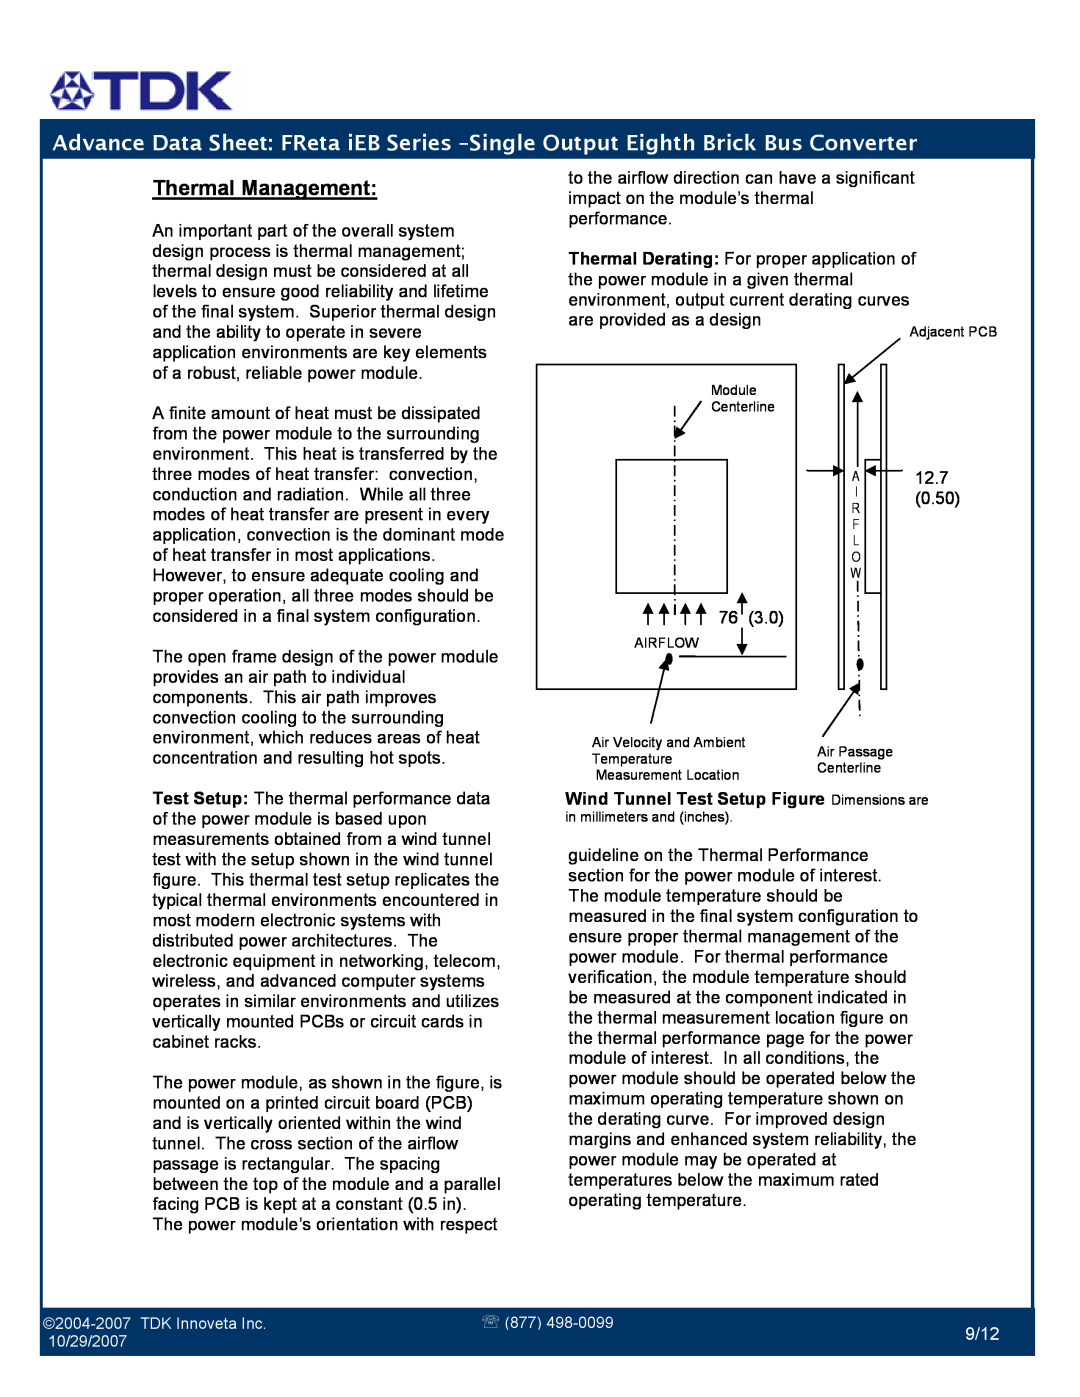 TDK iEB Series manual Thermal Management, 9/12 